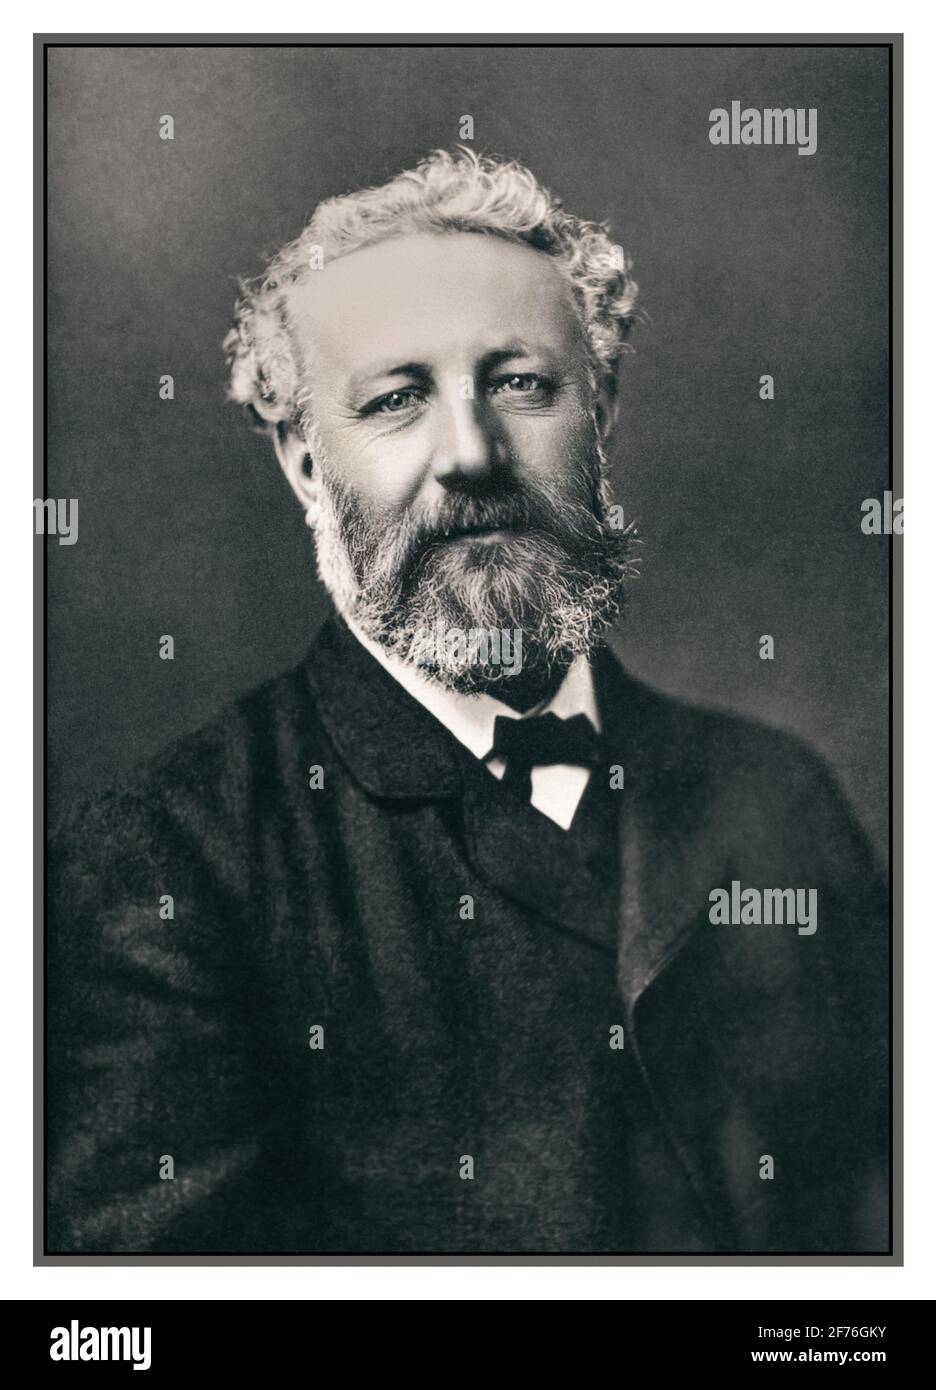 JULES VERNE STUDIO SUGGESTIVO Ritratto di Jules Verne 1870's. Dal famoso fotografo francese Felix Nadar (1820-1910) Parigi Francia Foto Stock